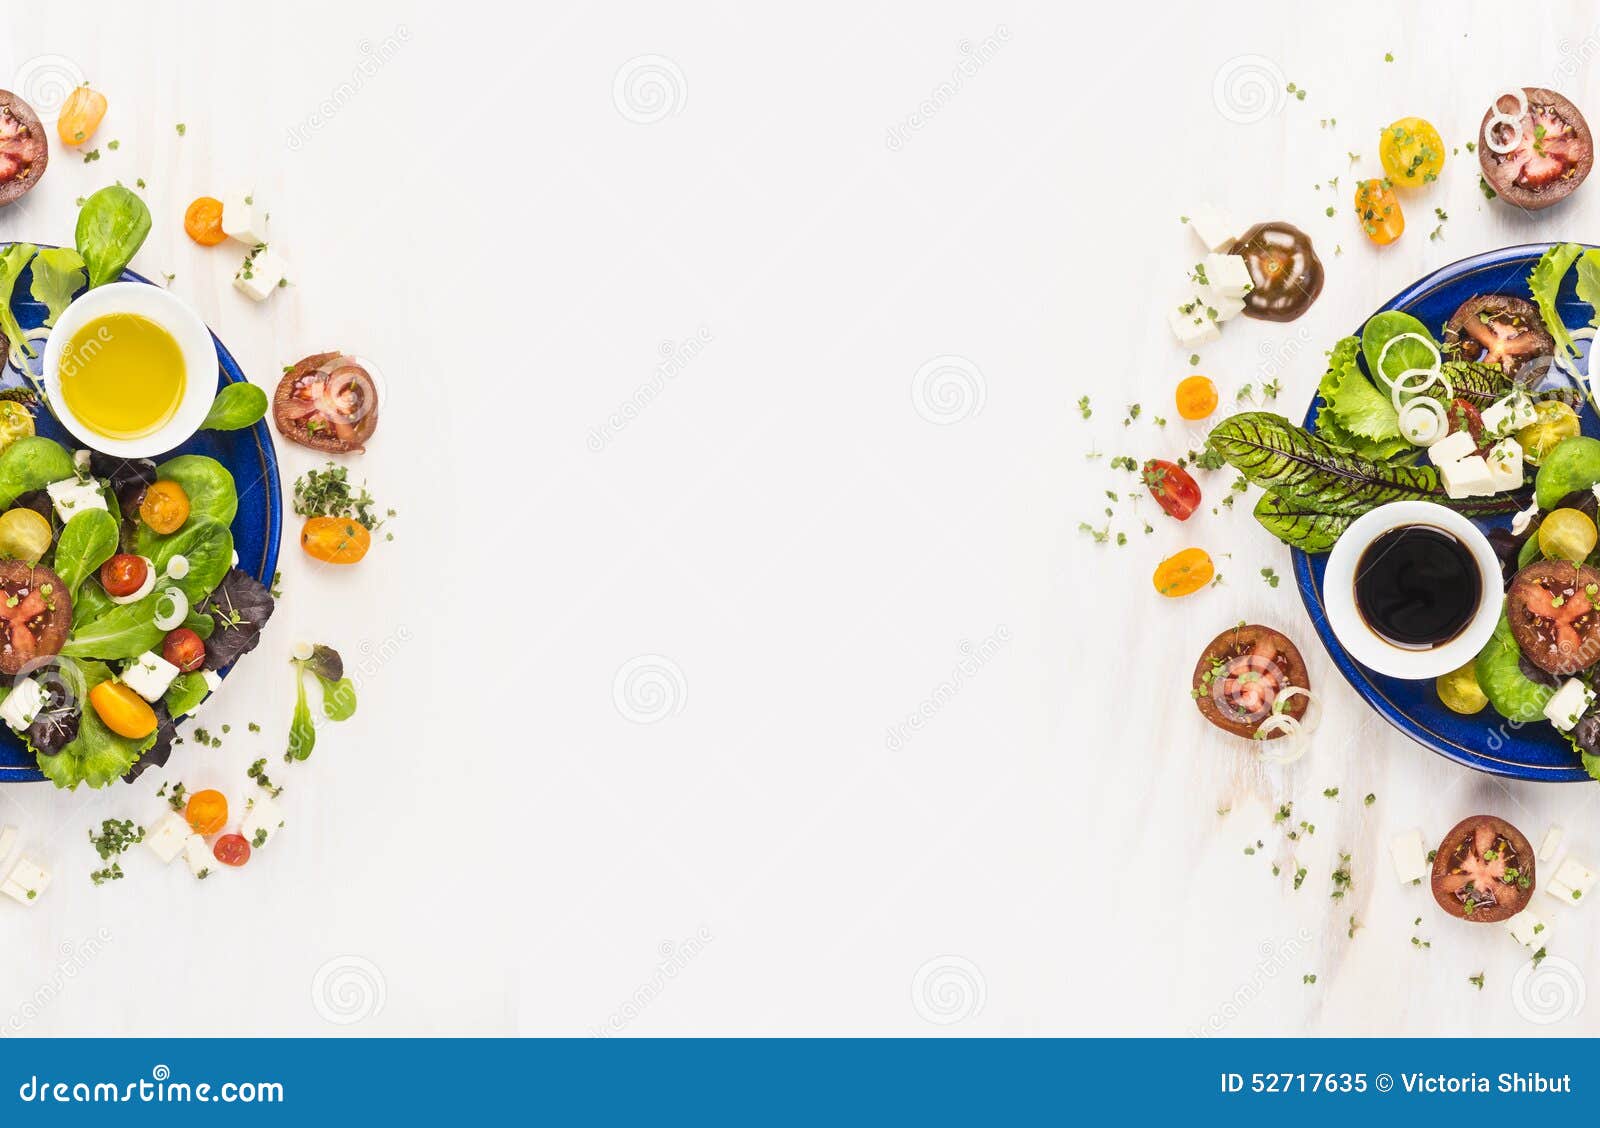 Details 100 background images for restaurant websites